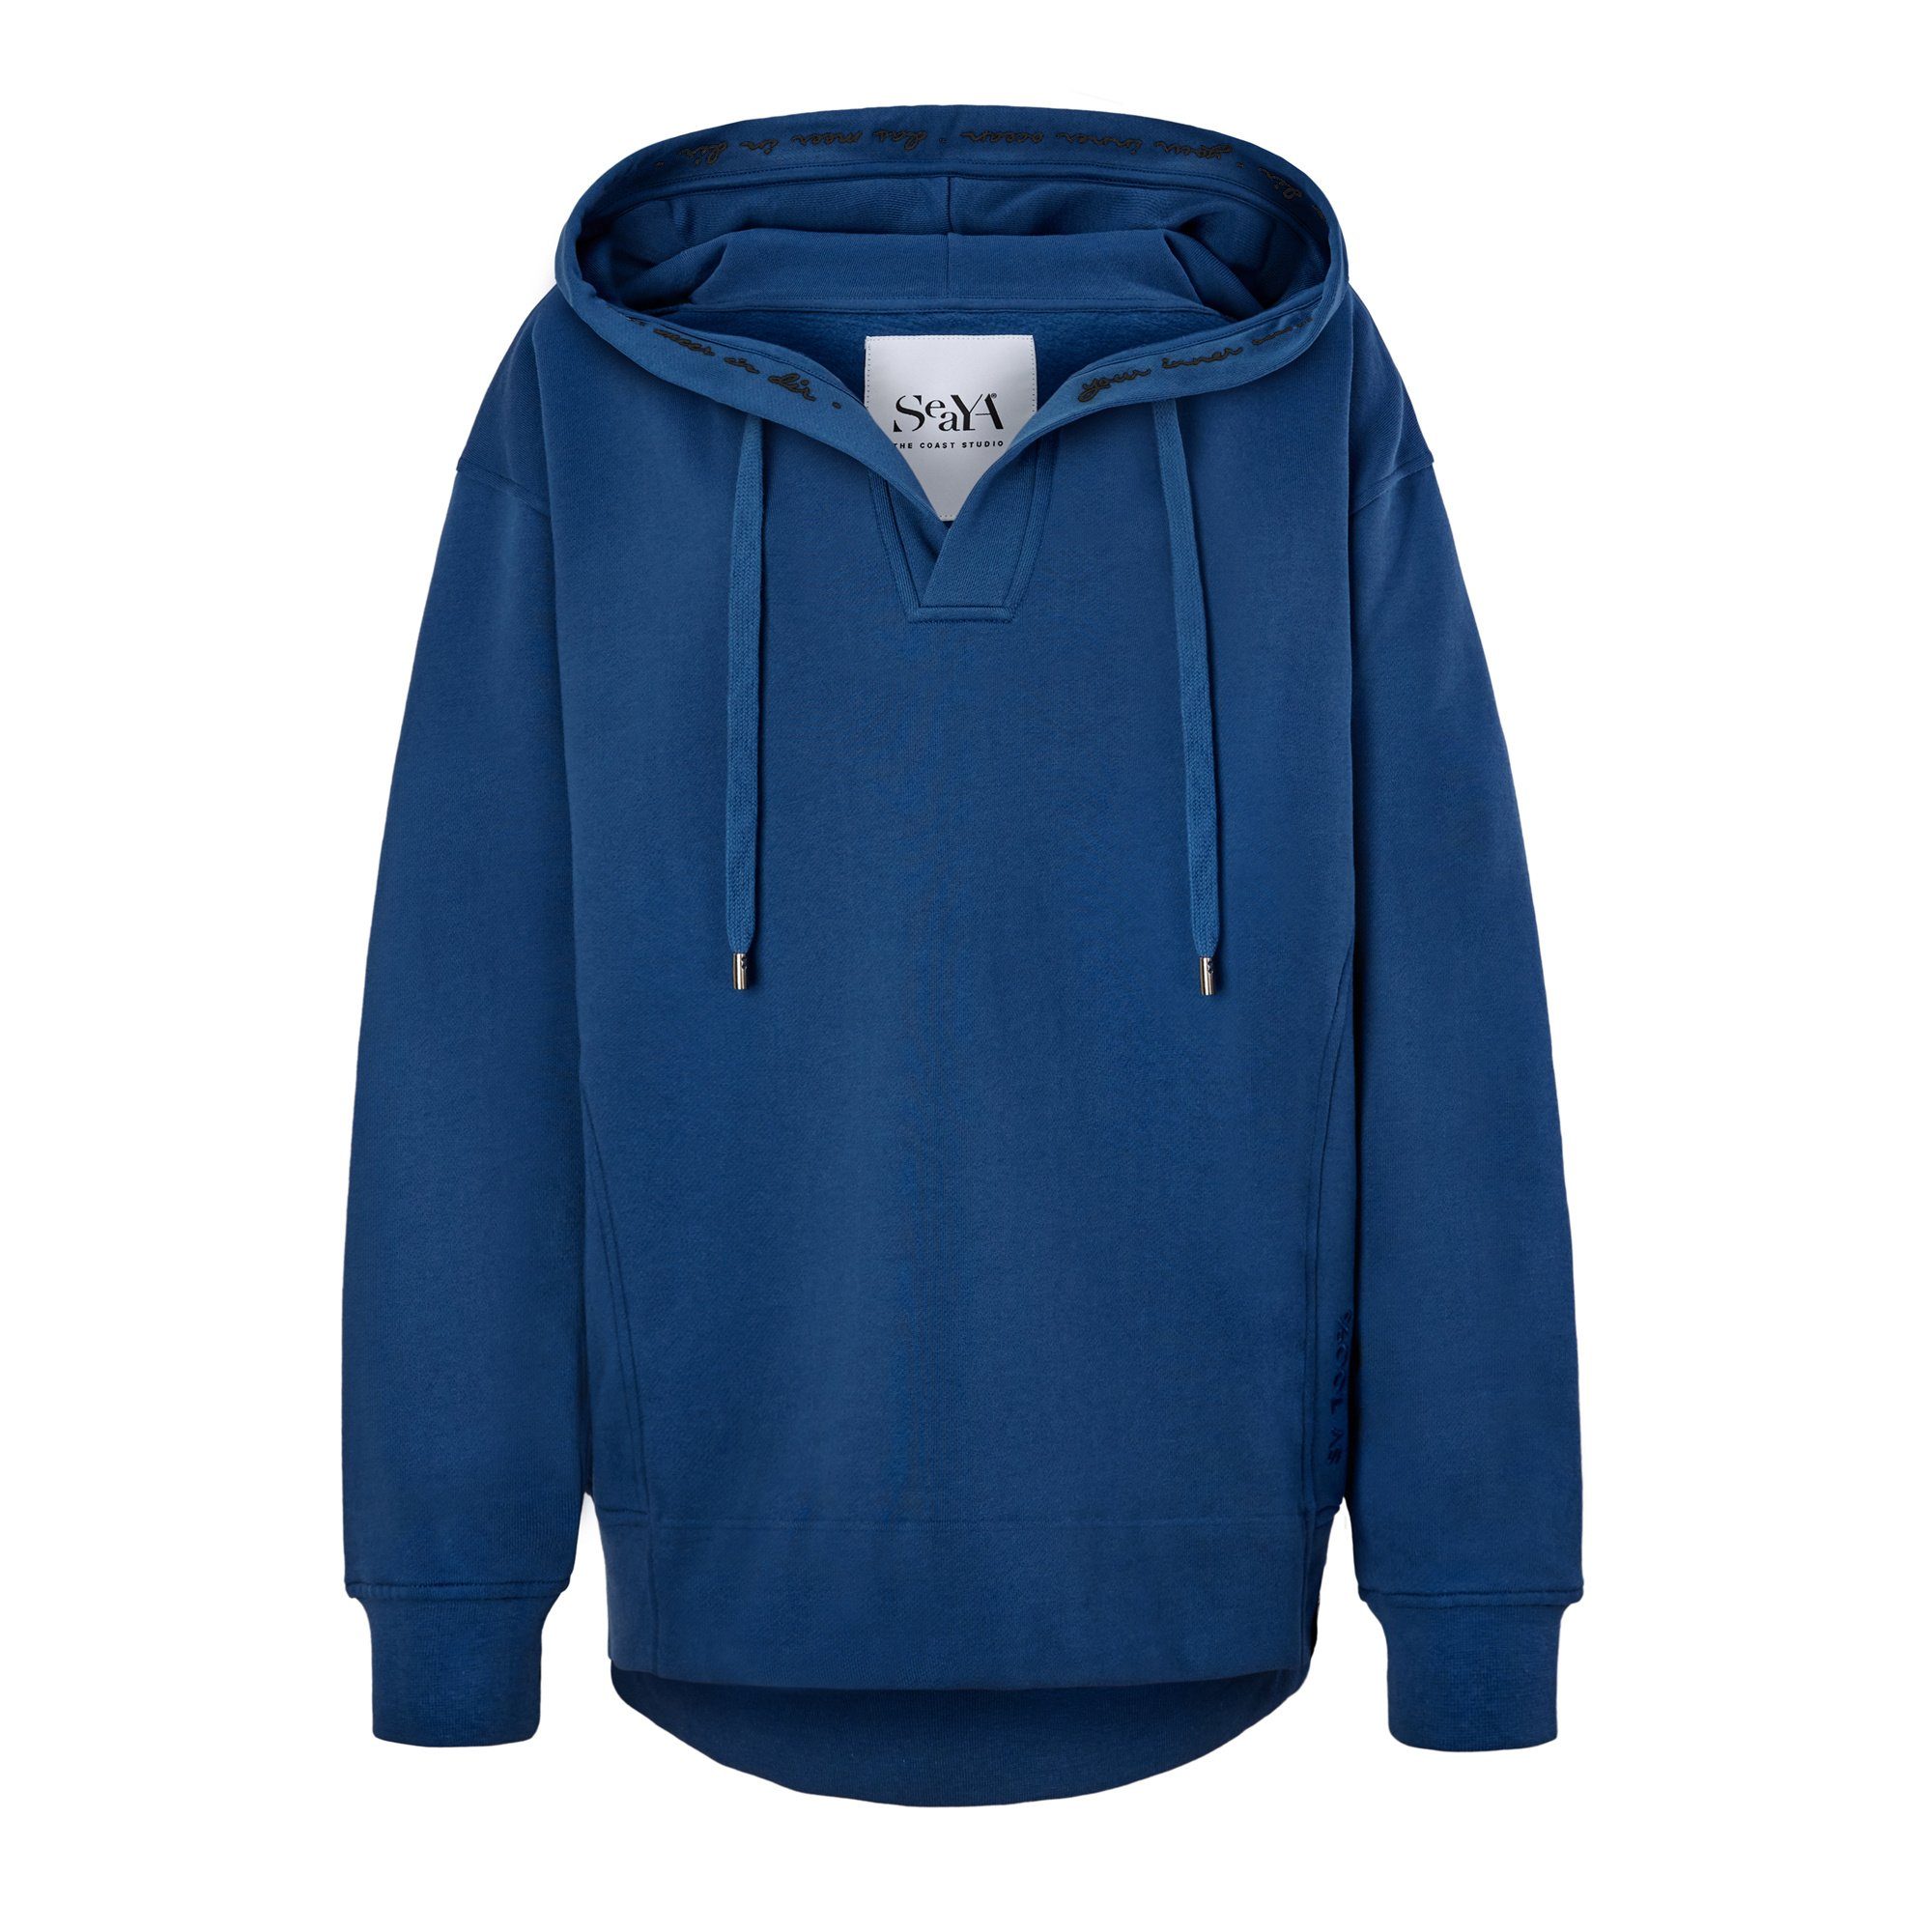 SeaYA Kapuzensweatshirt Sweatshirt Hoodie dunkelblau Stickerei Dunkelblau Stickerei) (schwarze Biobaumwolle